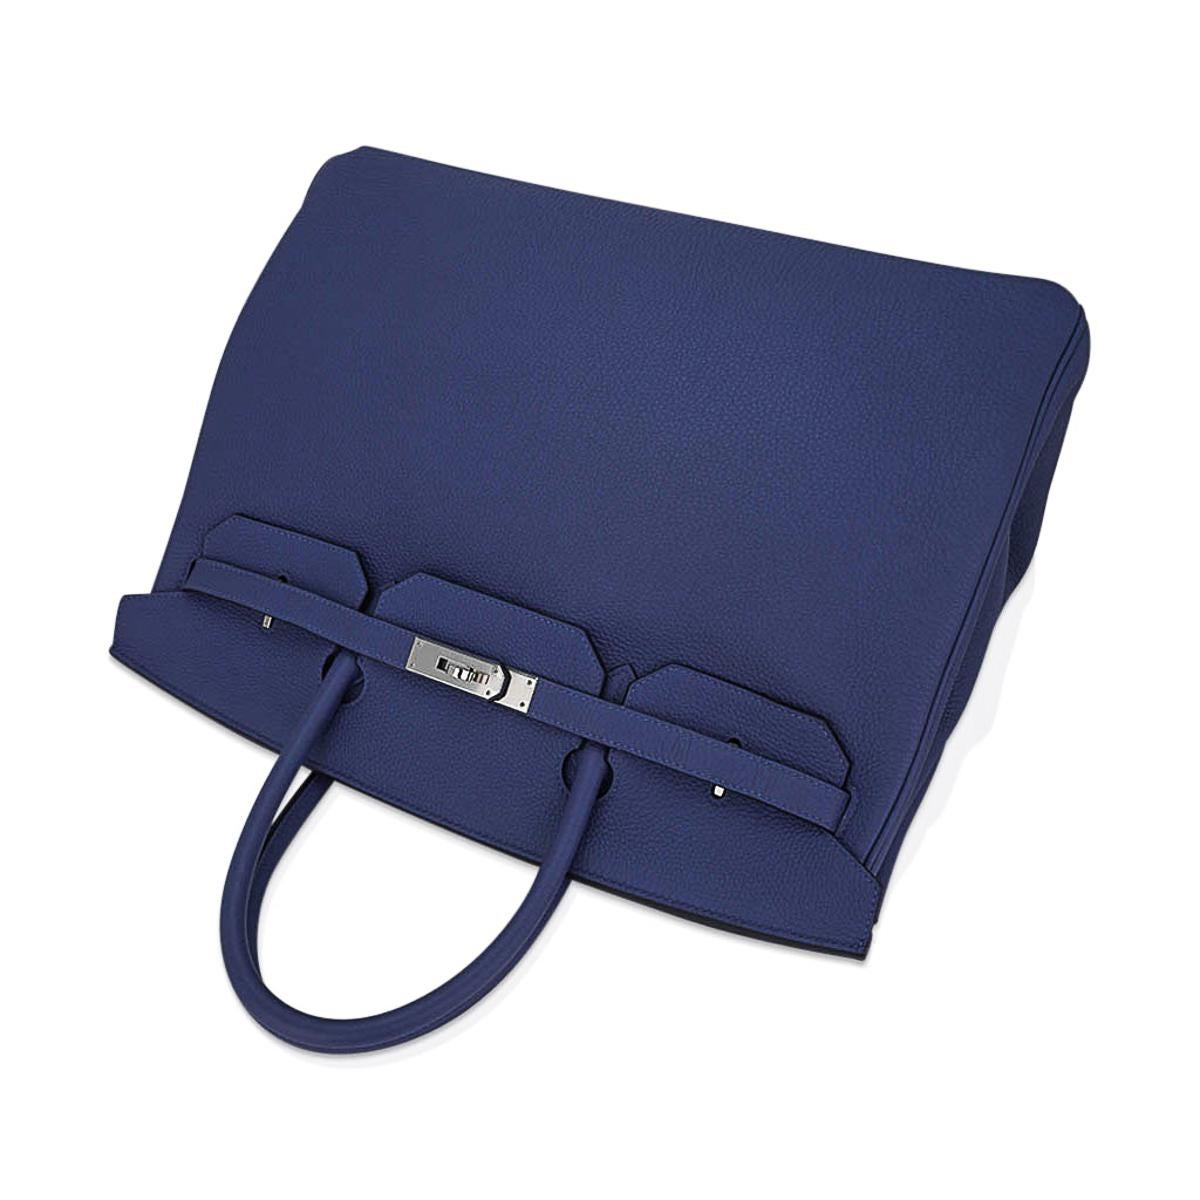 Hermes Birkin 40 Bag Blue de Prusse Palladium Hardware Togo Leather For Sale 6